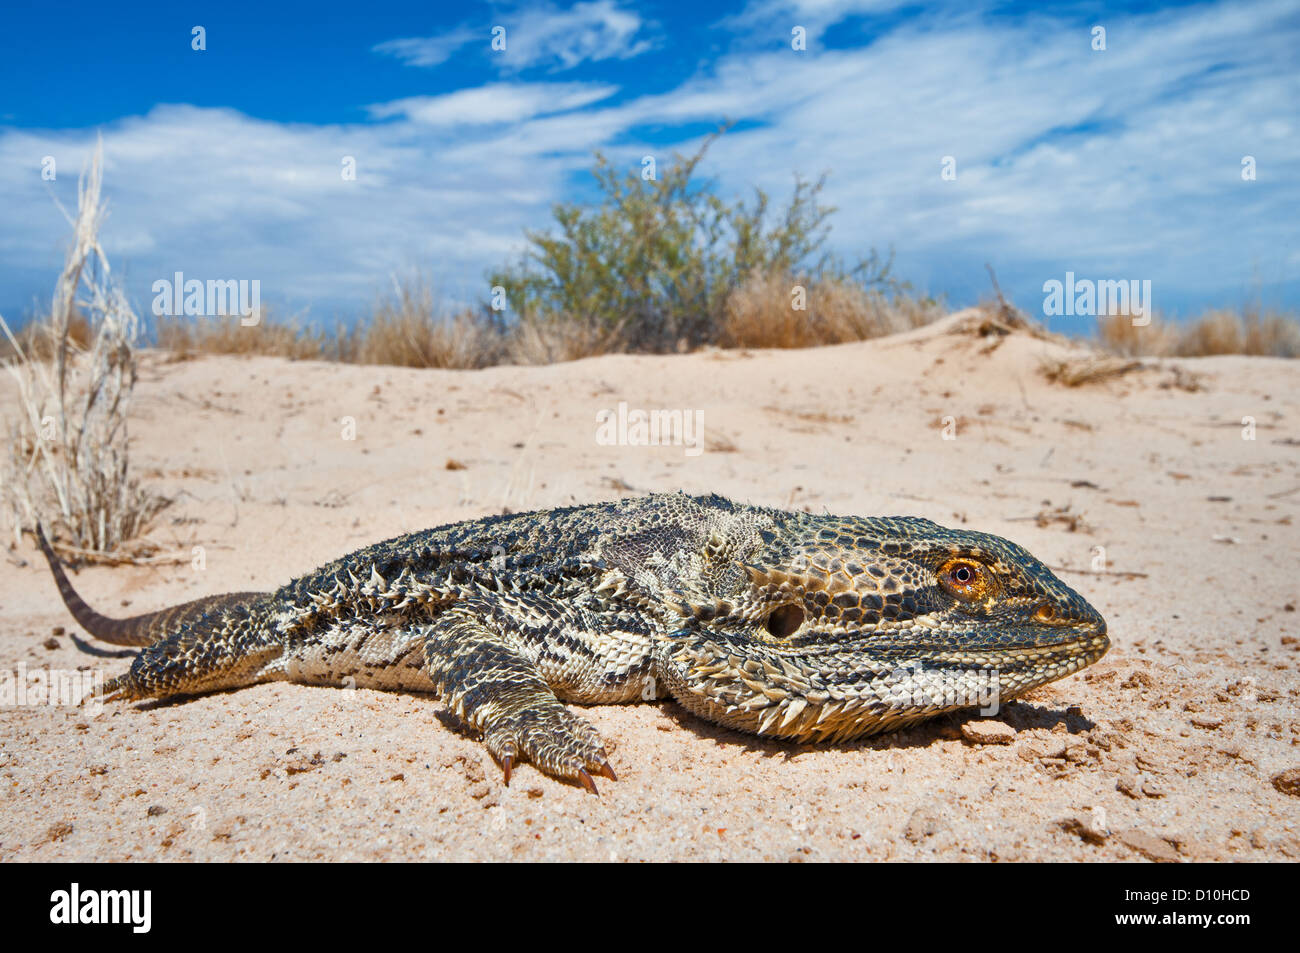 Bearded Dragon lying in the desert sand. Stock Photo